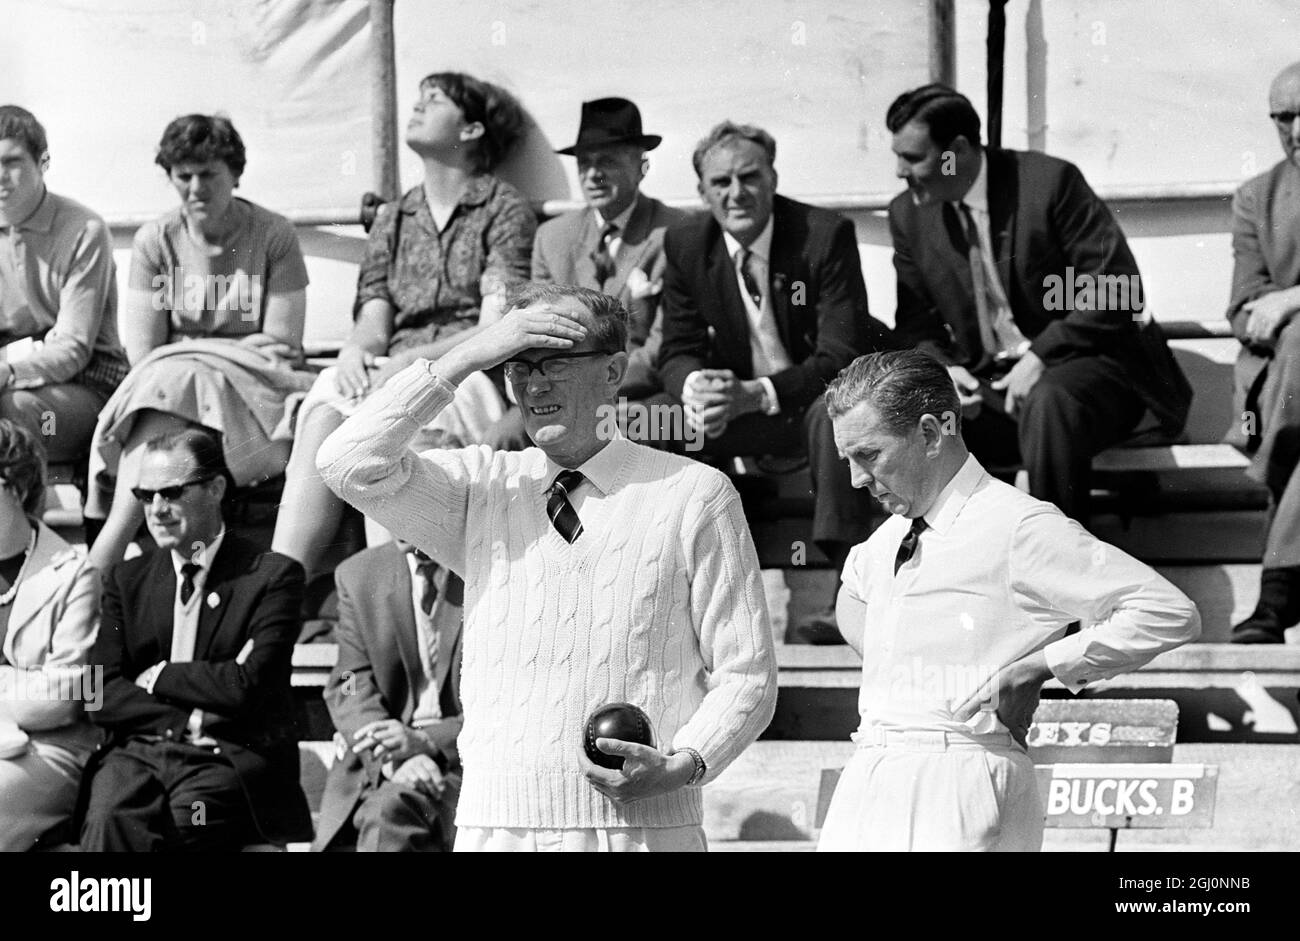 Walter Coulson , membre de l'équipe Leicester B , met la main à la tête pendant un moment tendu du match . Walter est photographié en jouant aux Championnats nationaux de Bowling annuels , Mortlake , Londres , Angleterre . 17 août 1967 Banque D'Images